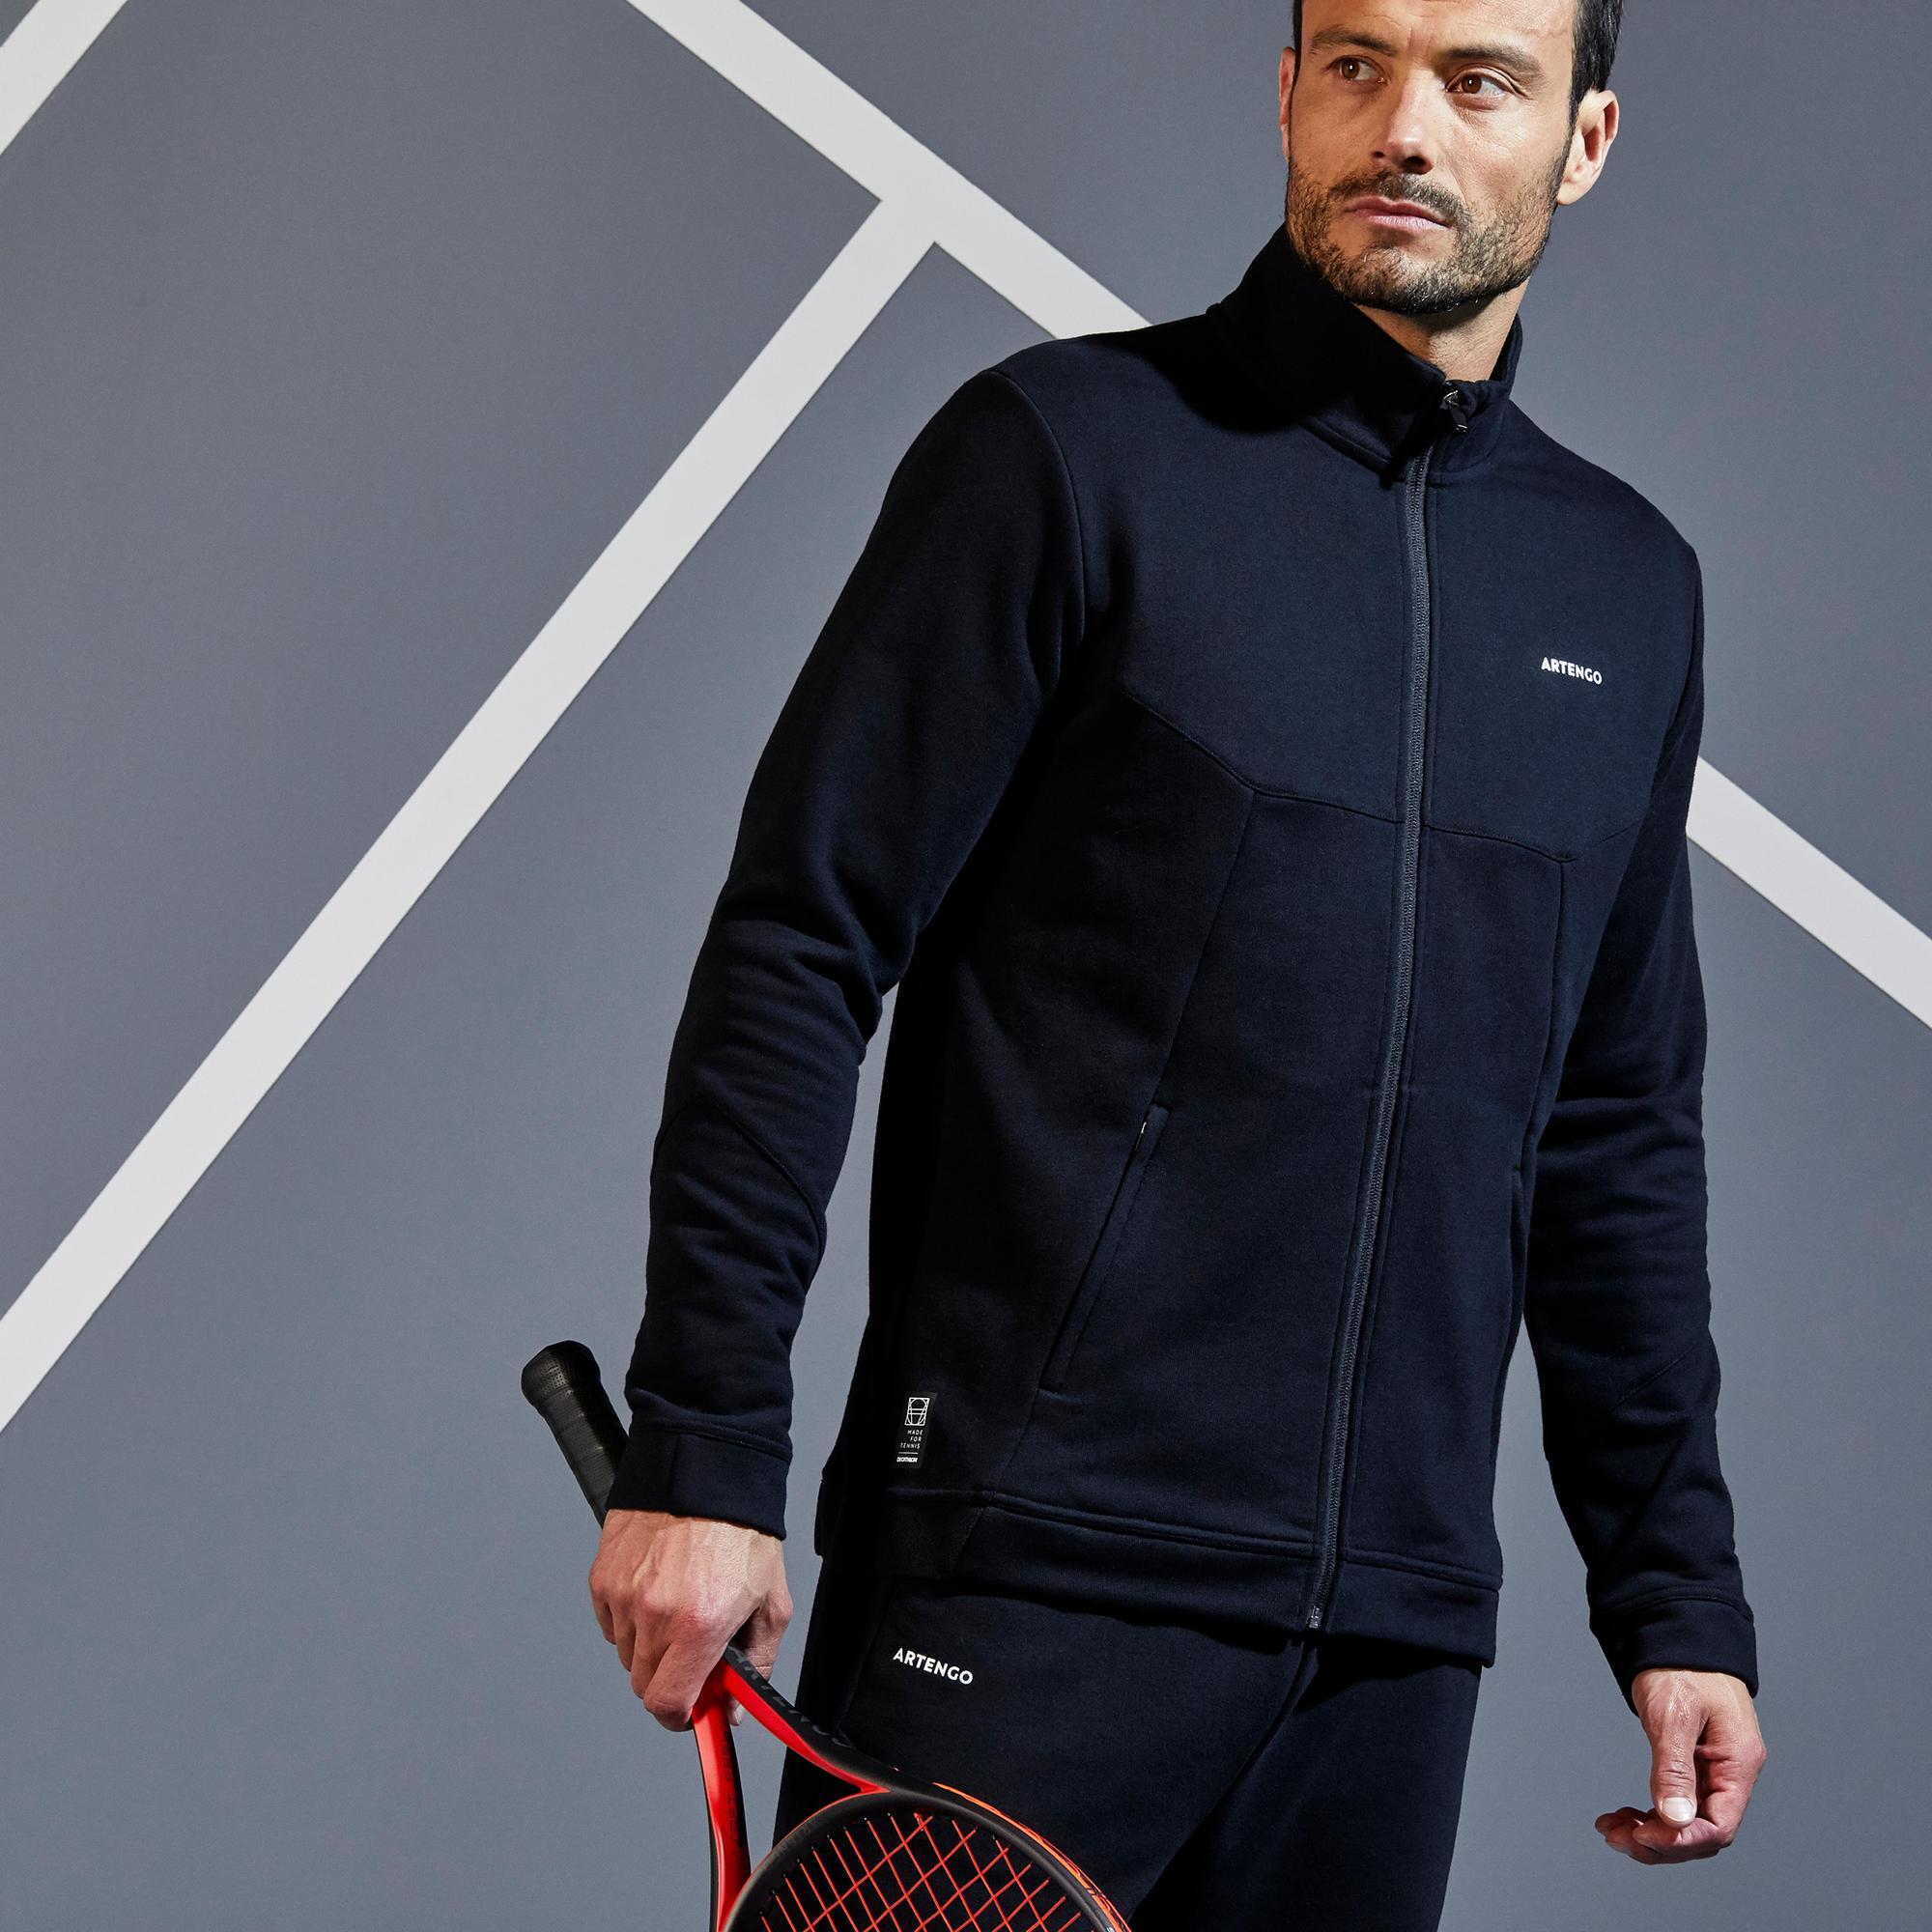 Jachetă Călduroasă Tenis TJA500 Negru Bărbați La Oferta Online ARTENGO imagine La Oferta Online